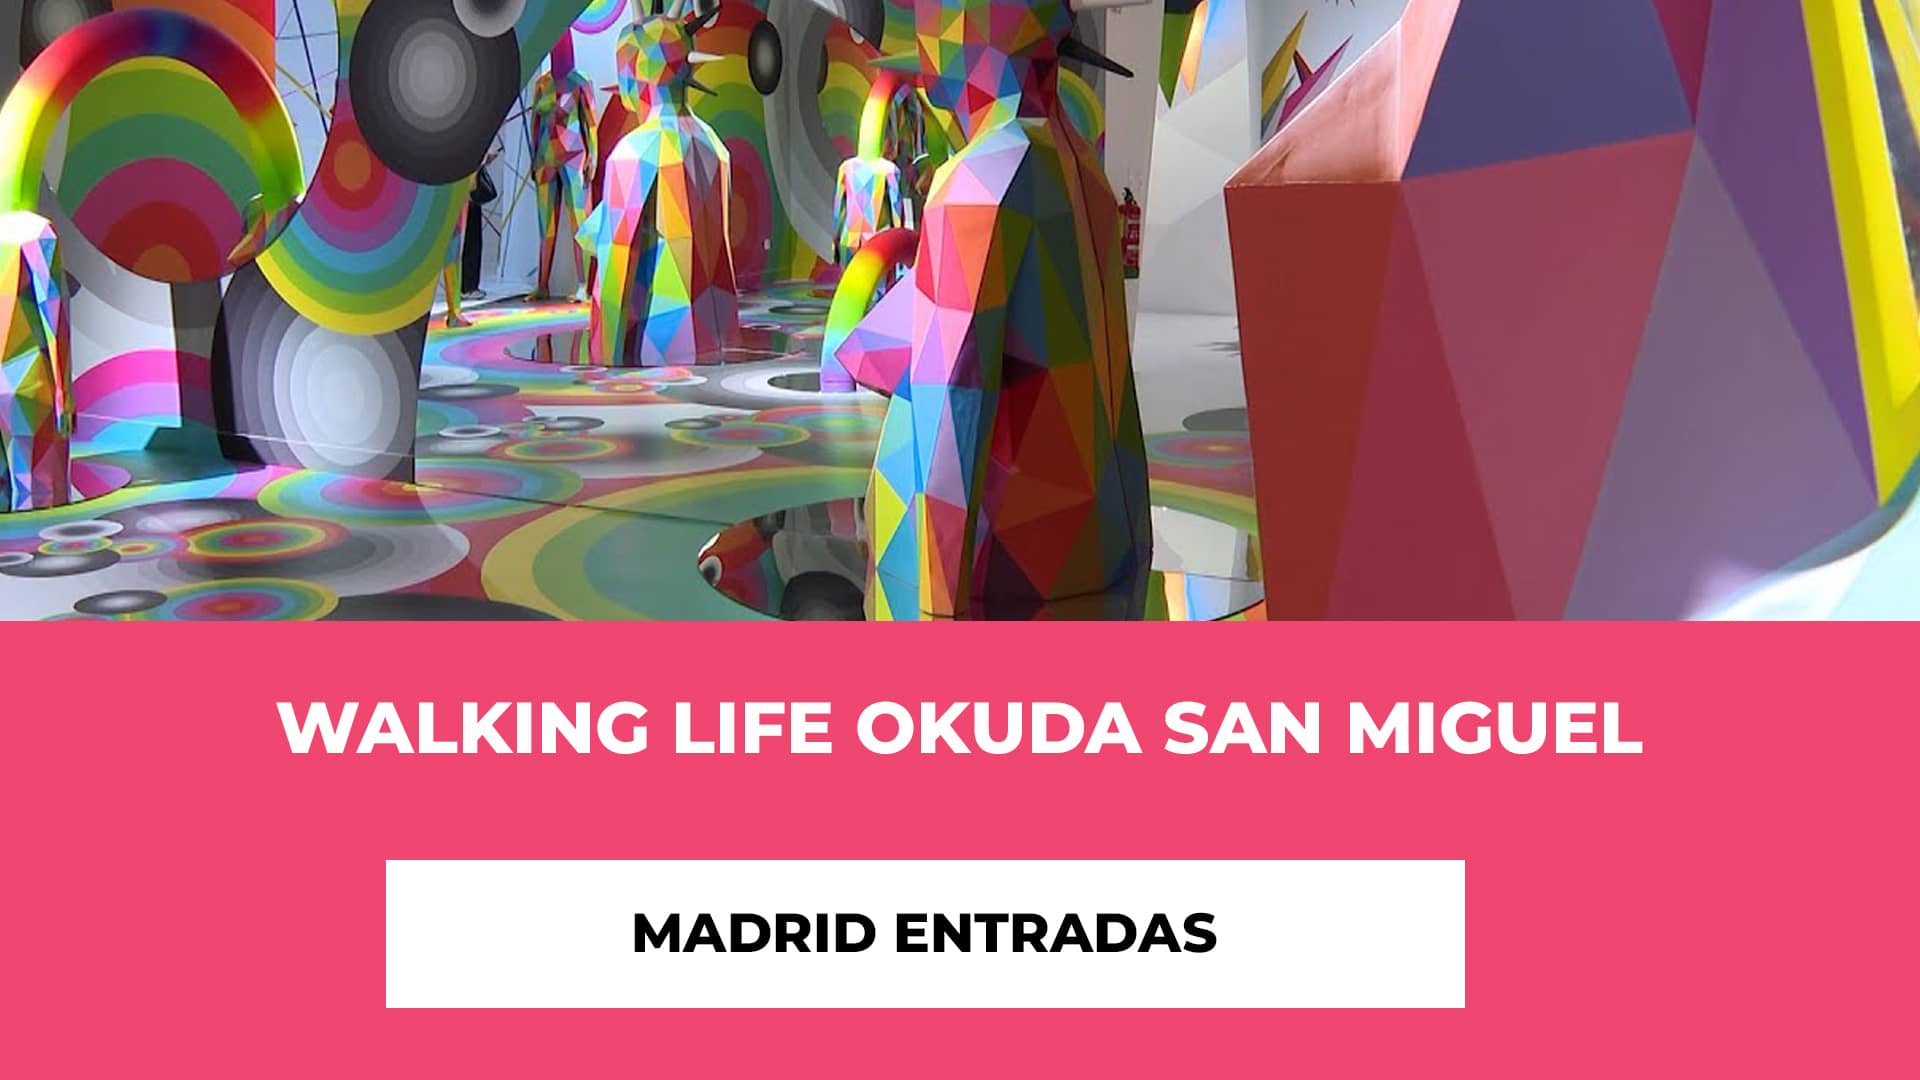 Walking Life Okuda San Miguel Madrid Entradas - Entrada Junior - Reducida - Movilidad Reducida - Pack Familiar